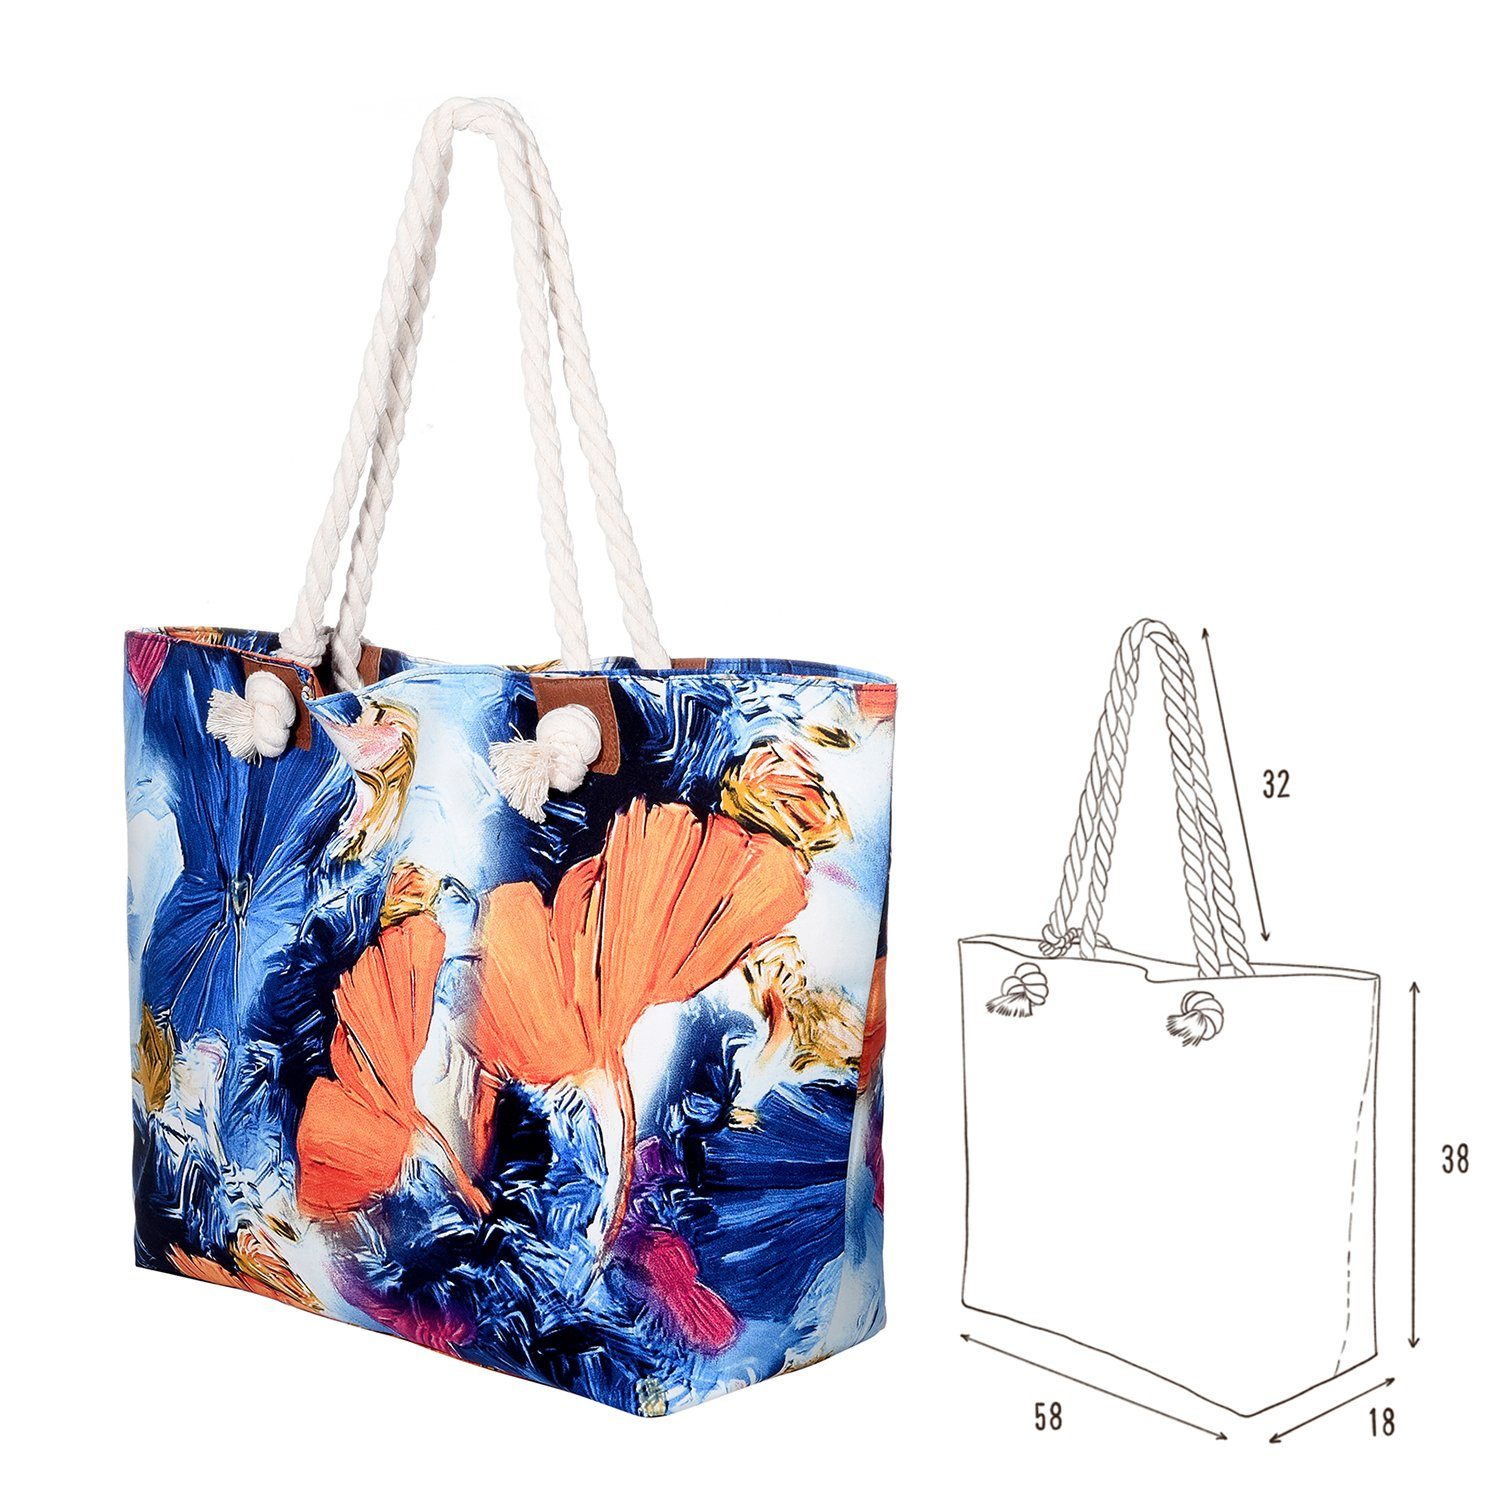 DonDon Strandtasche Shopper wasserabweisende Tasche world (2-tlg), inkl. Strandtasche, Beutel Große kleinem mit Reißverschluss, aquarelle